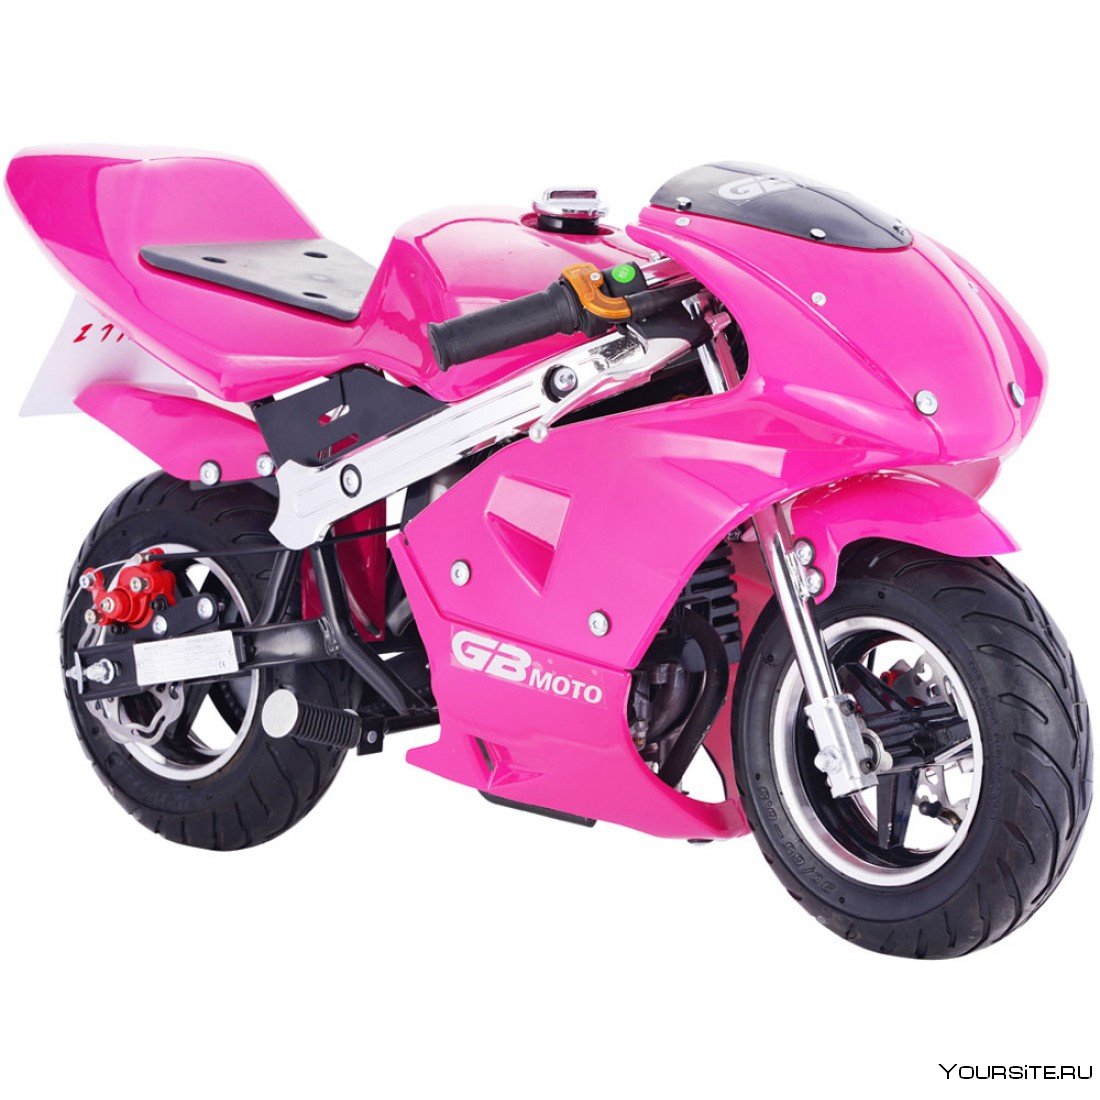 Куплю байки детские. Racing motorbike детский электромотоцикл. "Электромотоцикл Moto JC 919". Pocket Bike 49cc. Электро мотоцикл Крейсс т.3 для девочек.